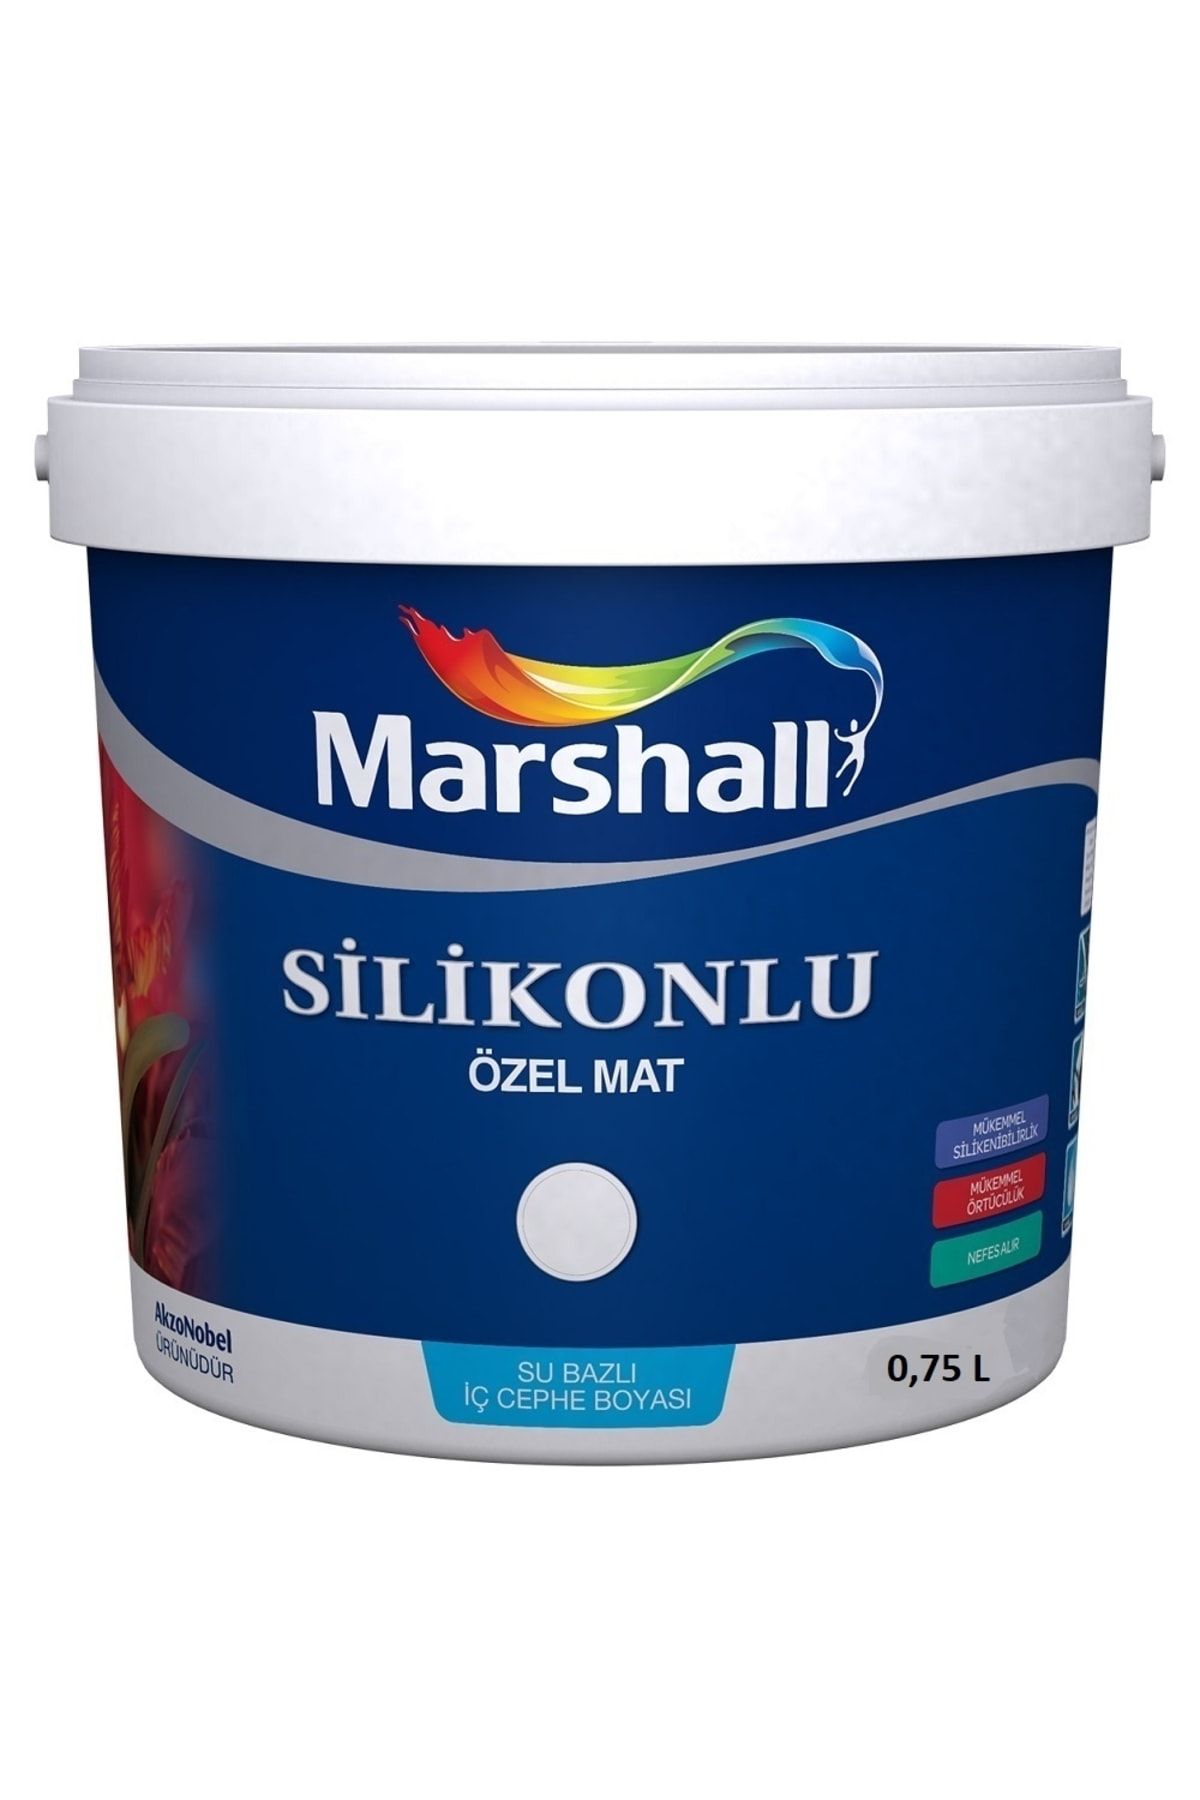 Marshall Silikonlu Özel Mat Silinebilir Iç Cephe Duvar Boyası 0.75 L Avokado